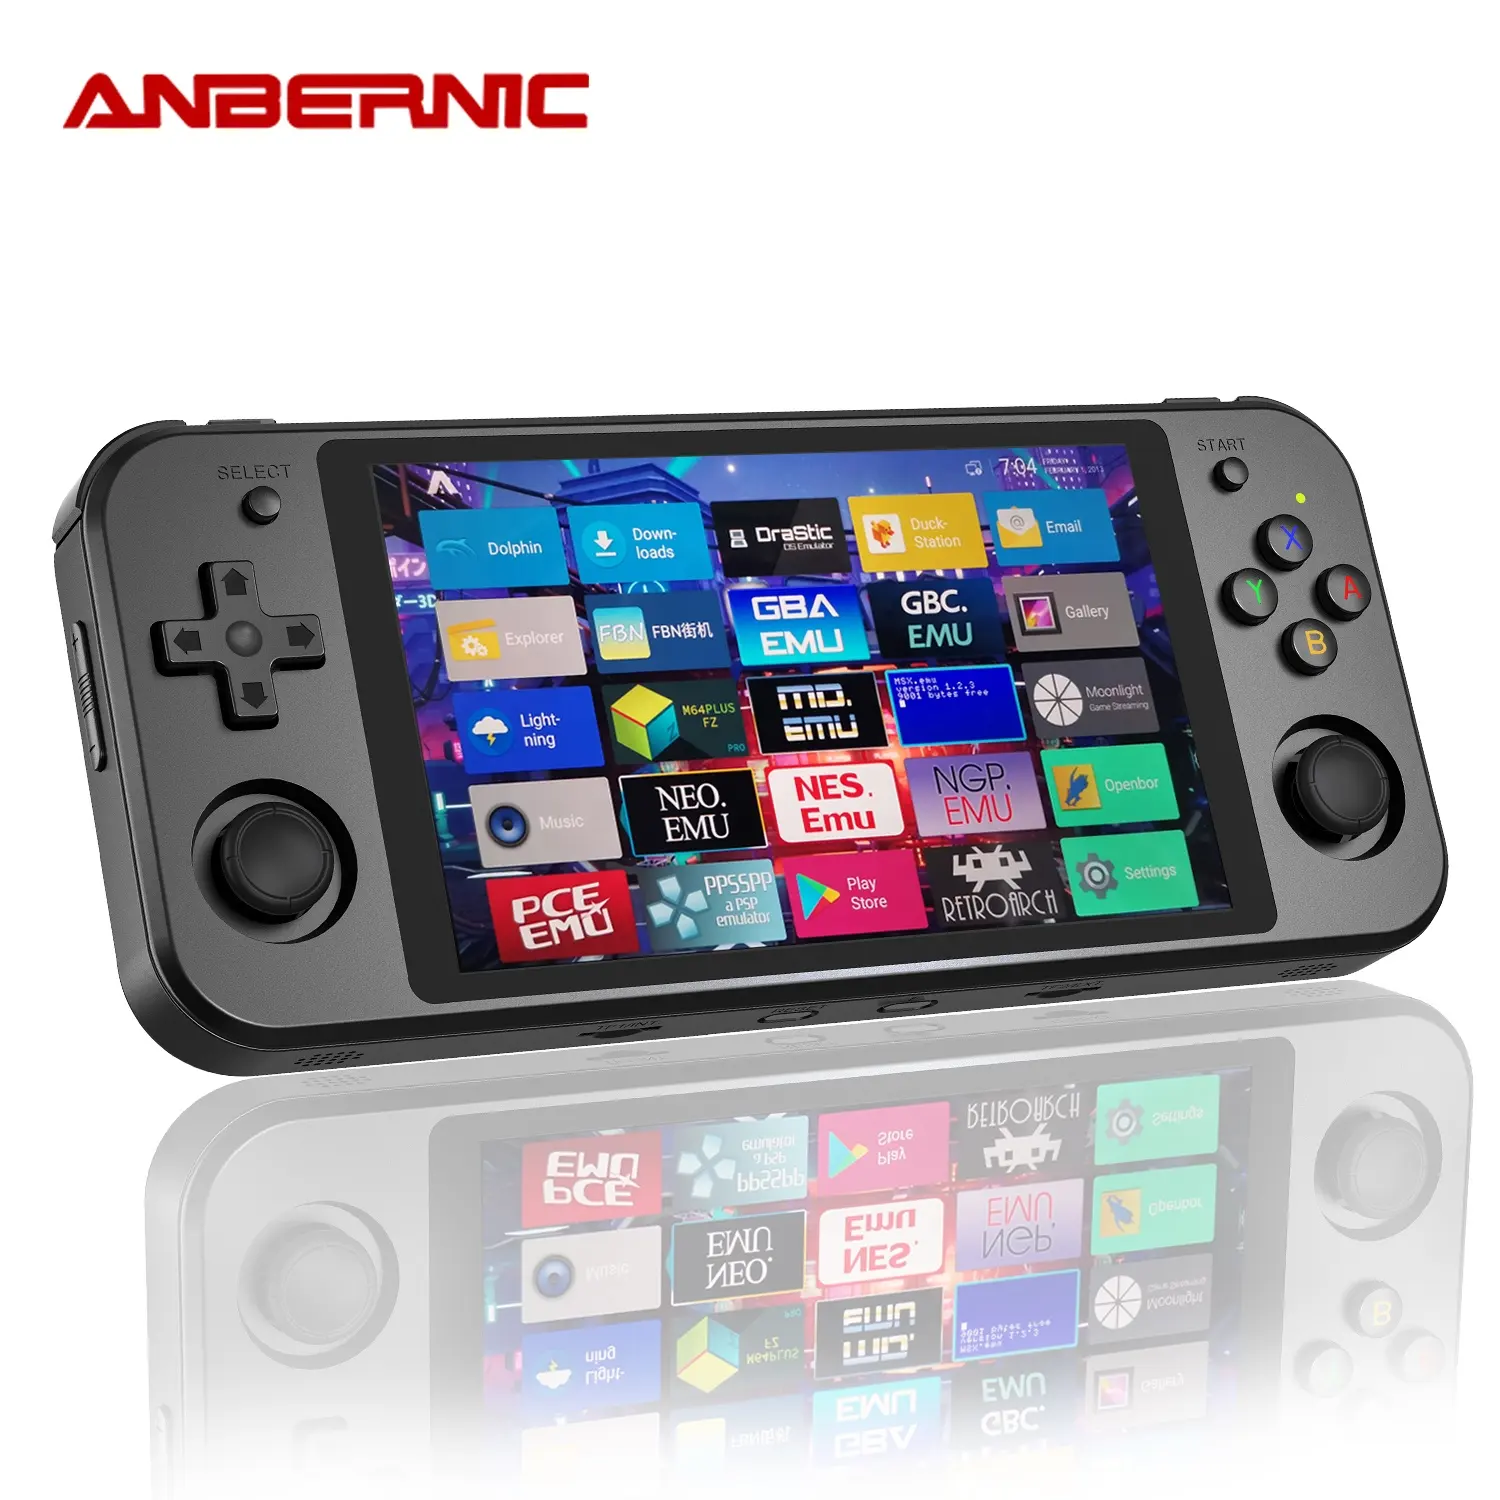 ANBERNIC 휴대용 게임 콘솔 RK3399 리눅스 안드로이드 듀얼 시스템 5.36 인치 OCA 화면 RG552 레트로 플레이어 최고의 PC 게임